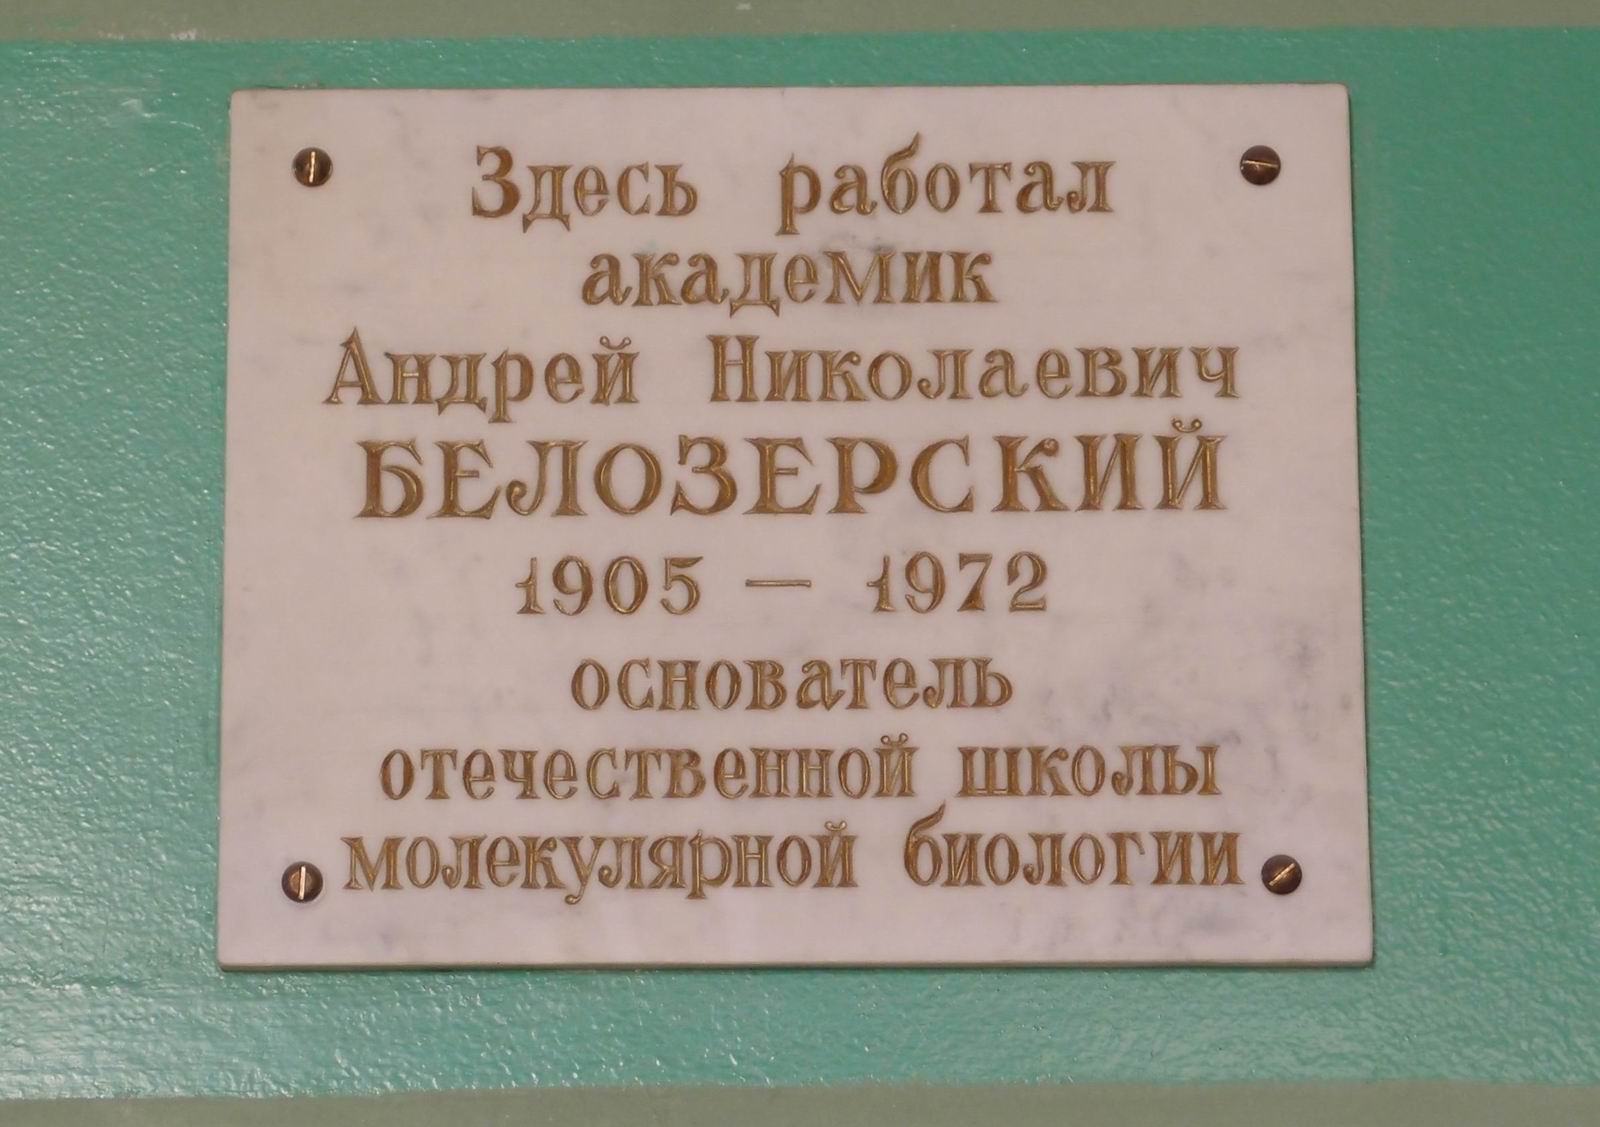 Мемориальная доска Белозерскому А.Н. (1905-1972), на Ленинских горах, владение 1, строение 12 (в холле здания биологического и почвенного факультетов МГУ).